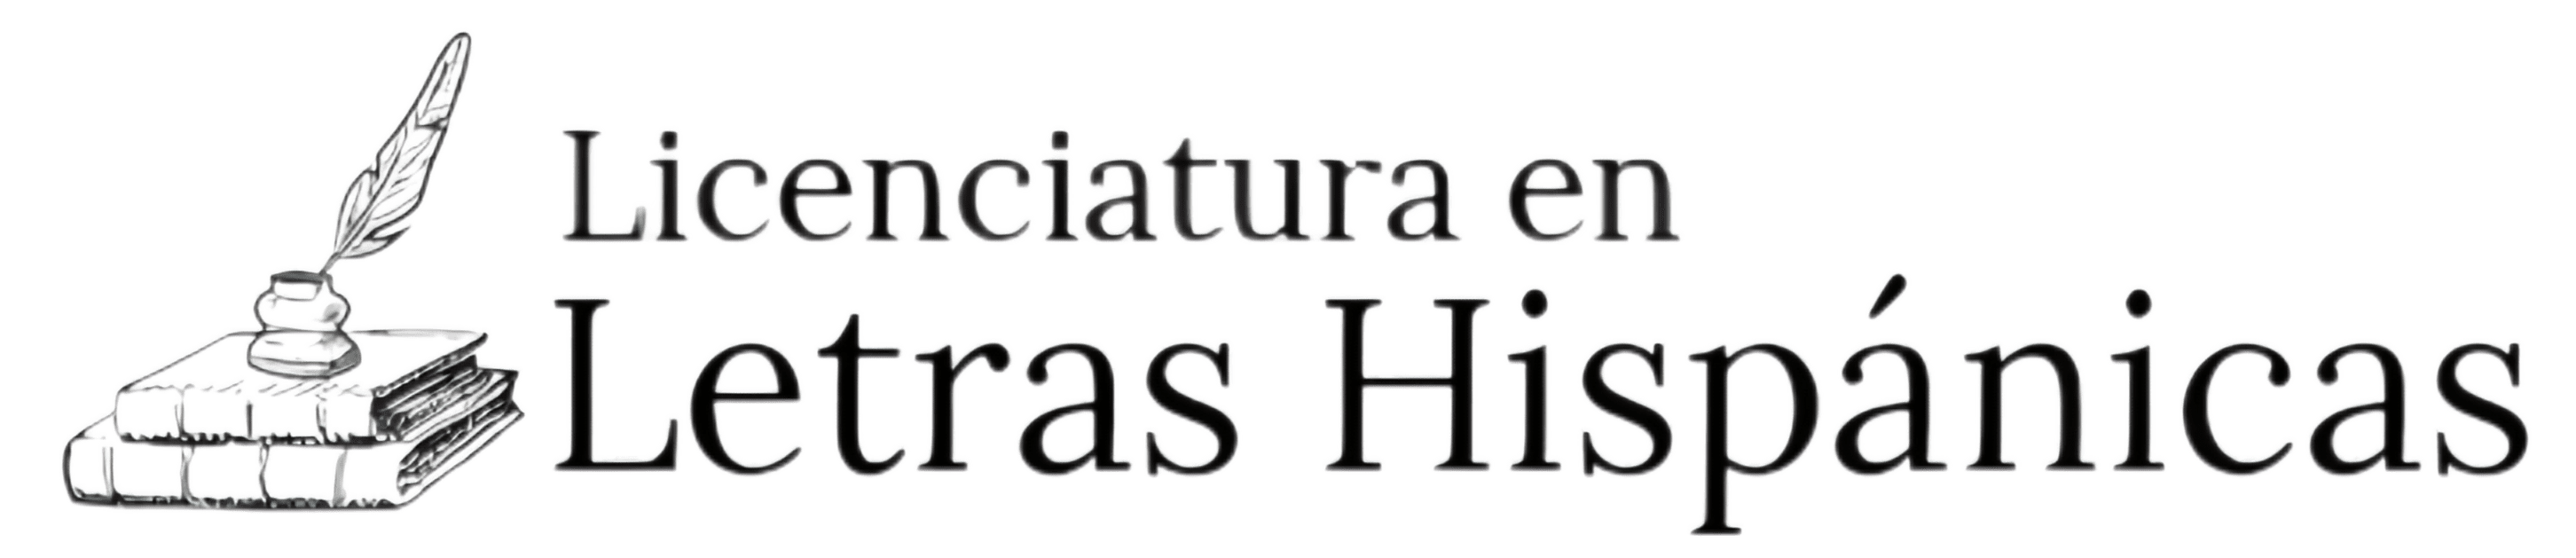 Licenciatura en Letras Hispánicas – UAM Iztapalapa